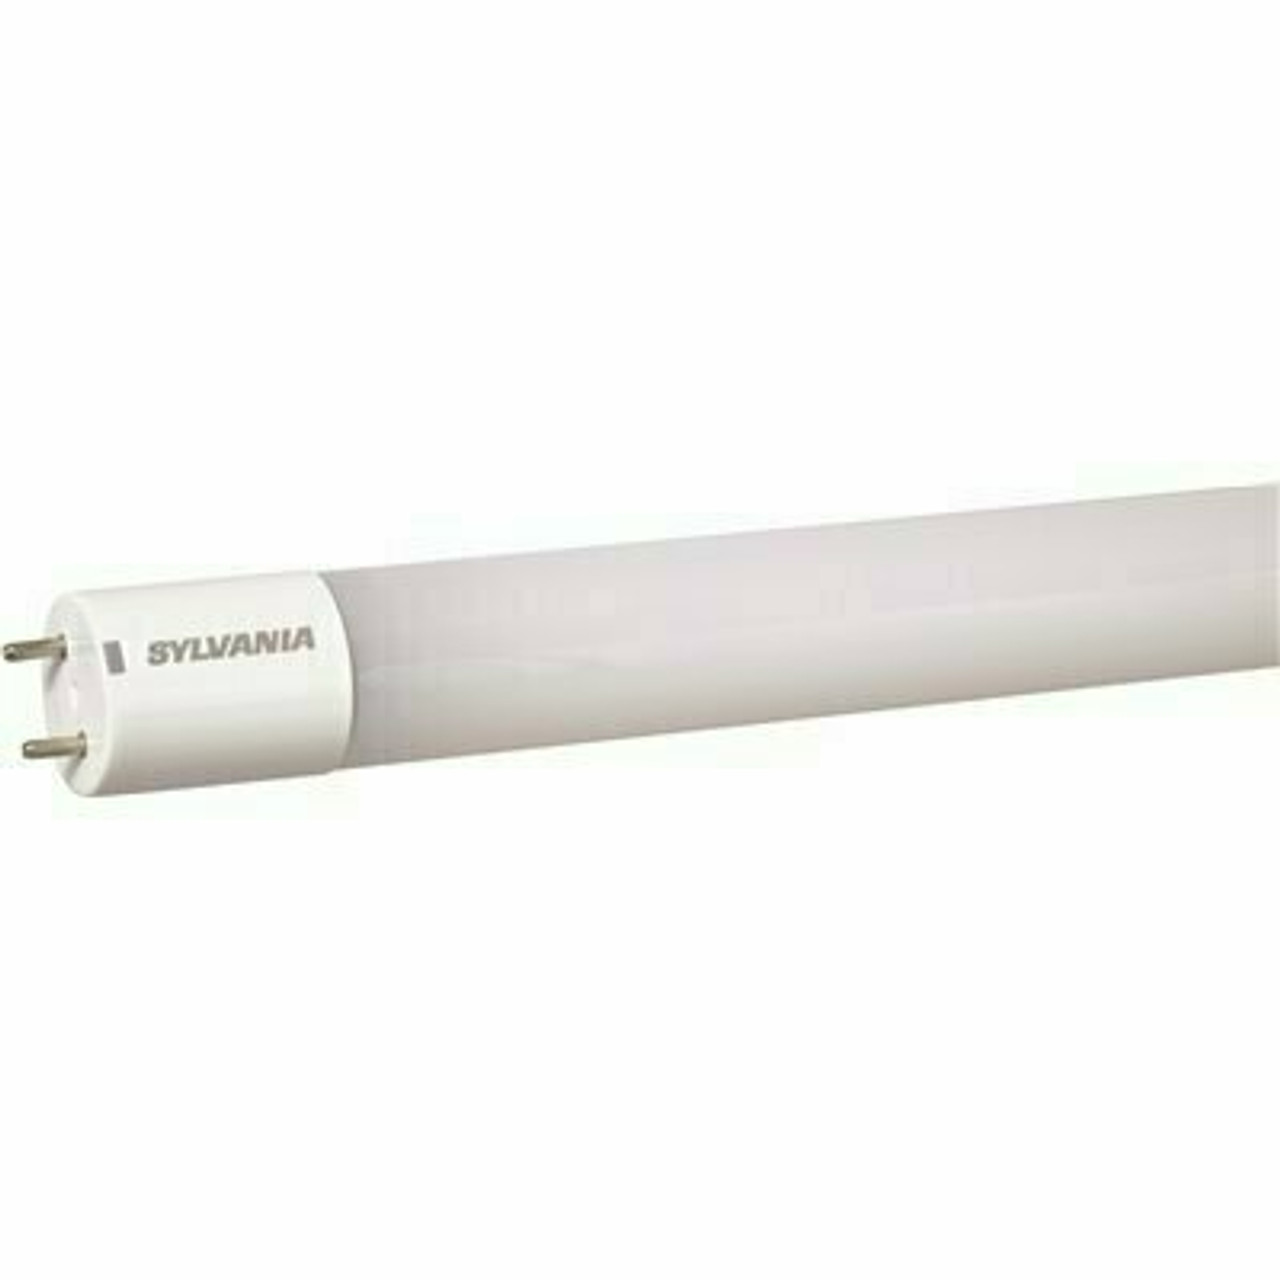 Sylvania 13-Watt 4 Ft. Linear T8 Led Tube Light Bulb, Cool White (25-Pack)